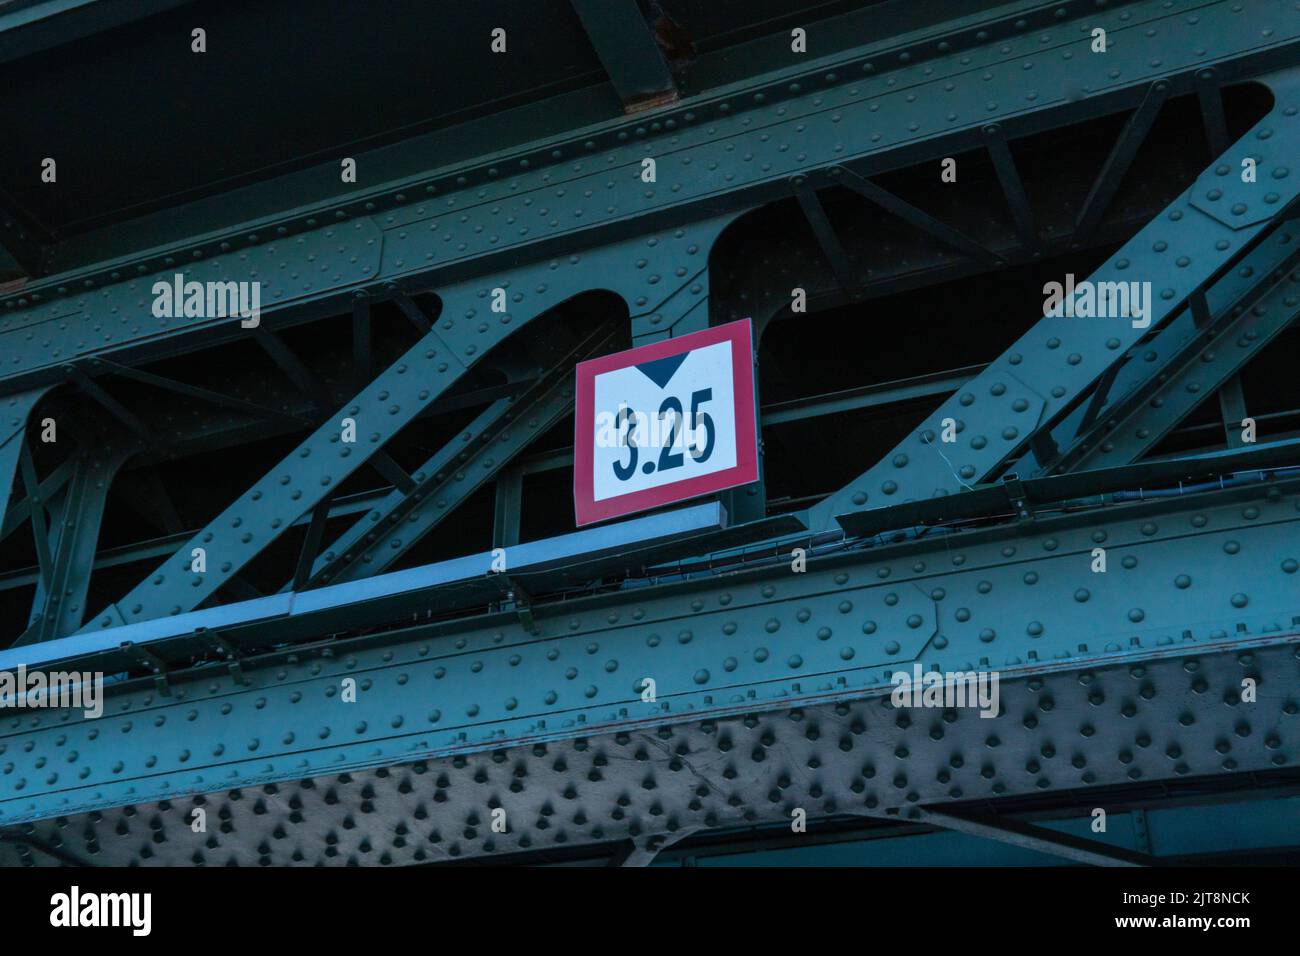 RUSSIE, PETERSBOURG - 20 AOÛT 2022 : construction du panneau de signalisation du pont de circulation danger maximum hauteur de conduite interdite, avertissement d'arrêt de concept en auto pour la forme rouge Banque D'Images